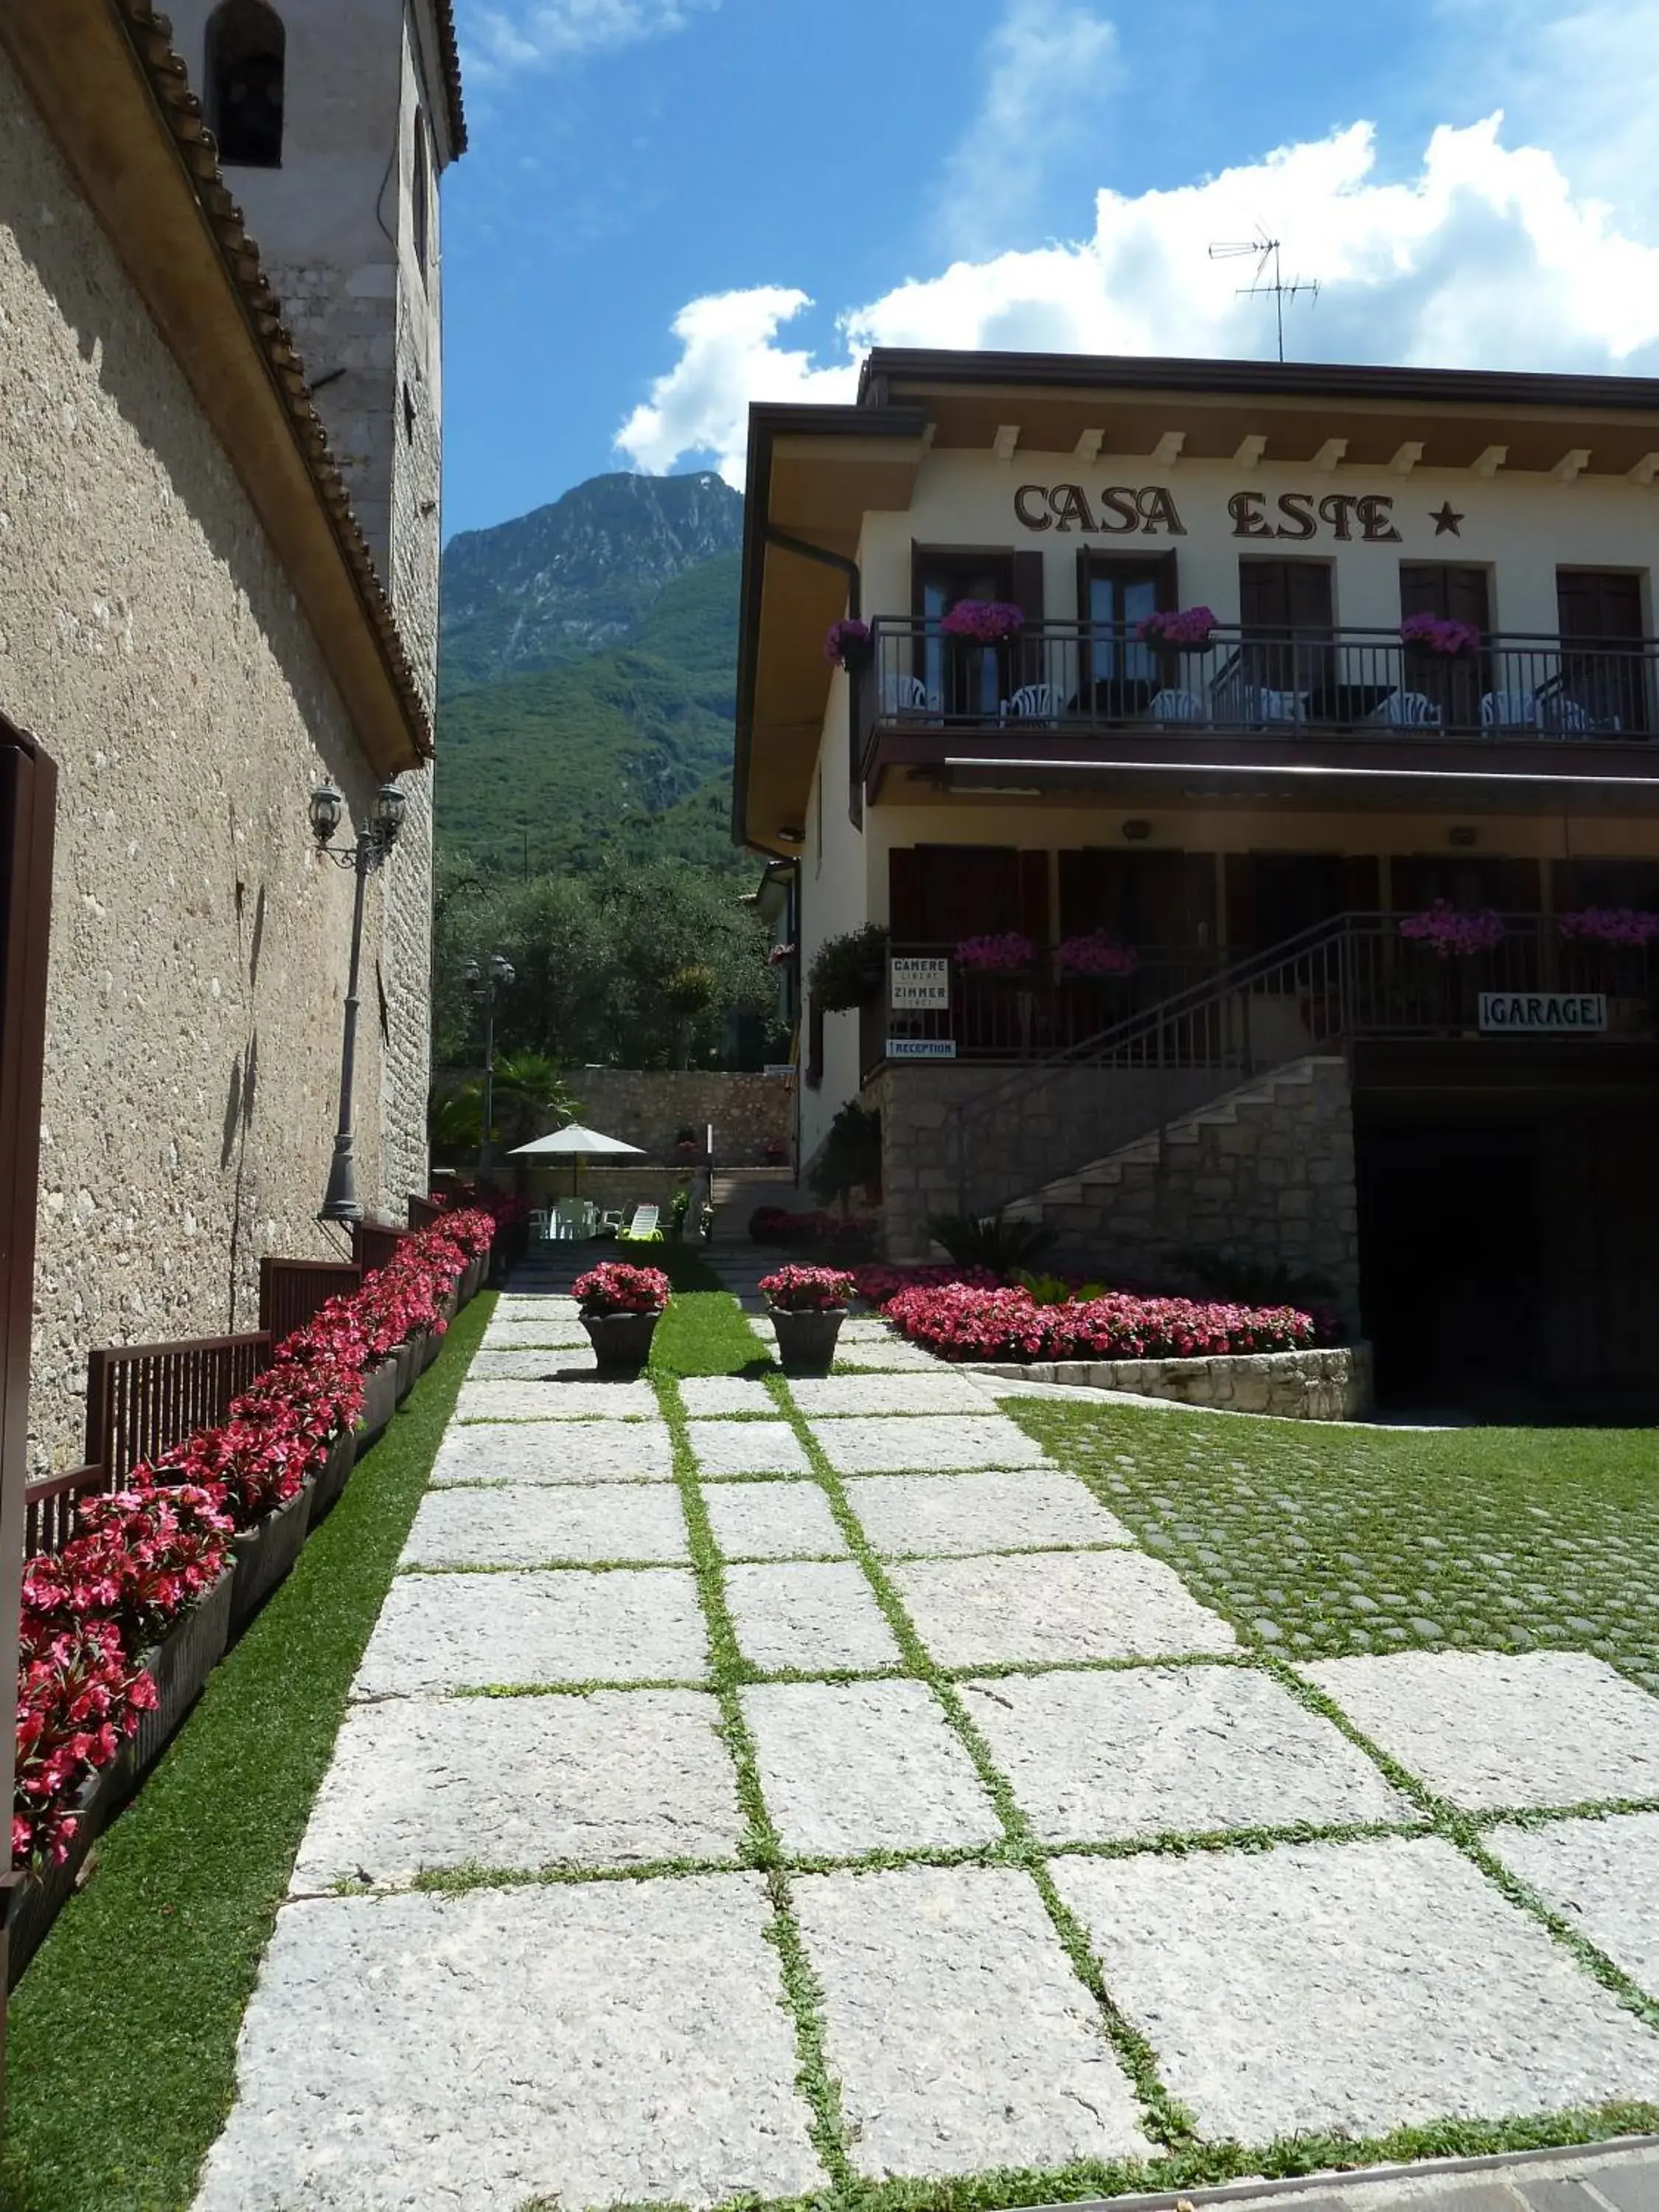 Facade/entrance, Garden in Albergo Casa Este